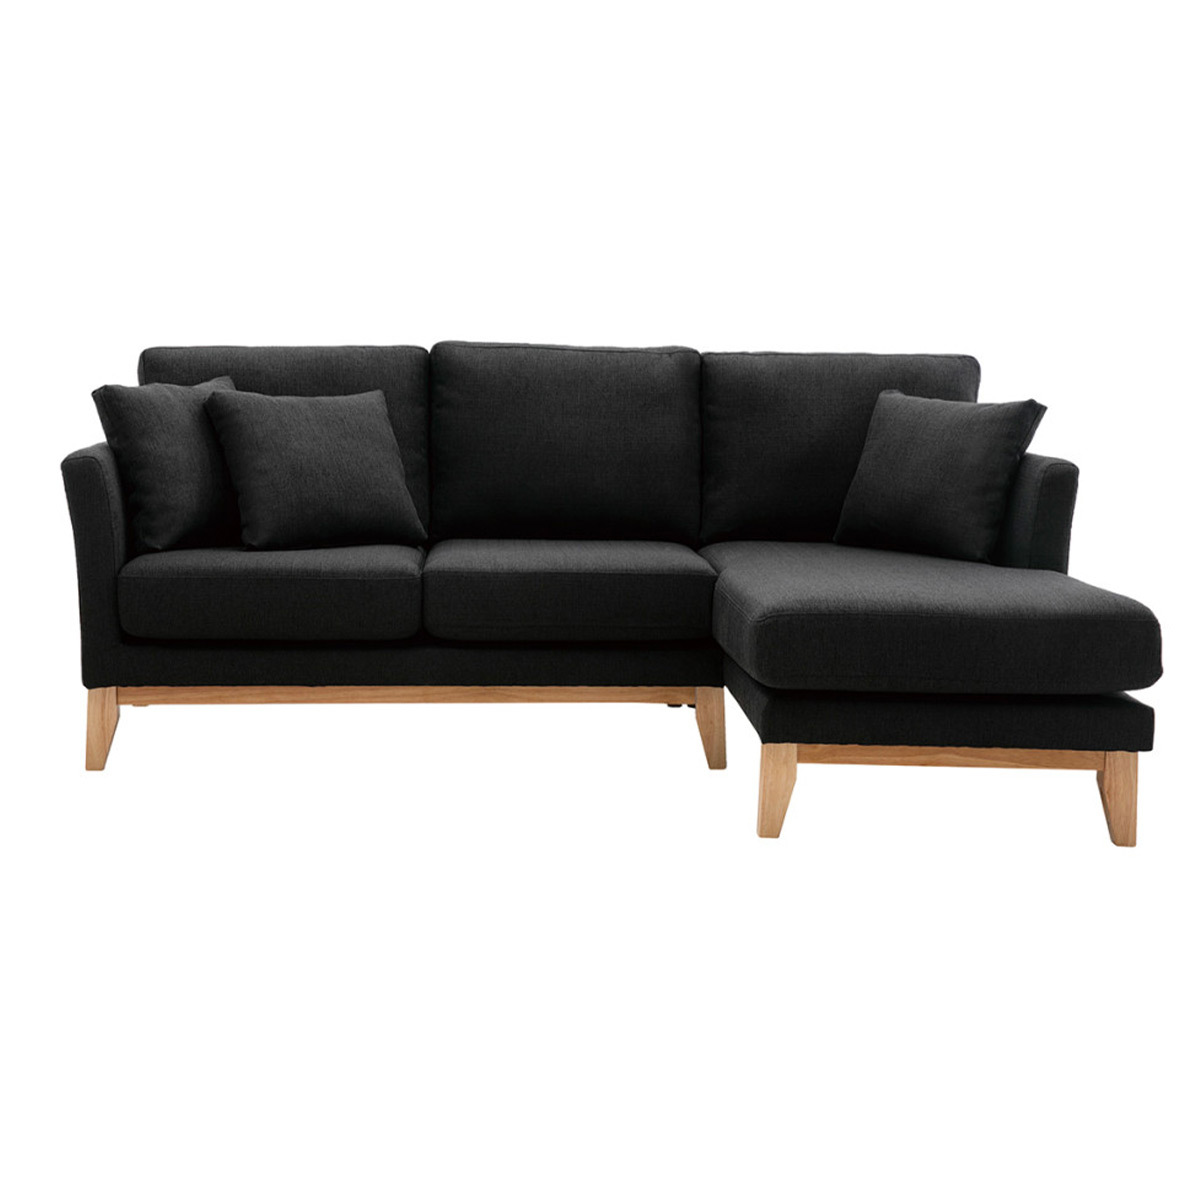 Canapé d'angle droit déhoussable scandinave 4 places en tissu gris foncé et bois clair OSLO